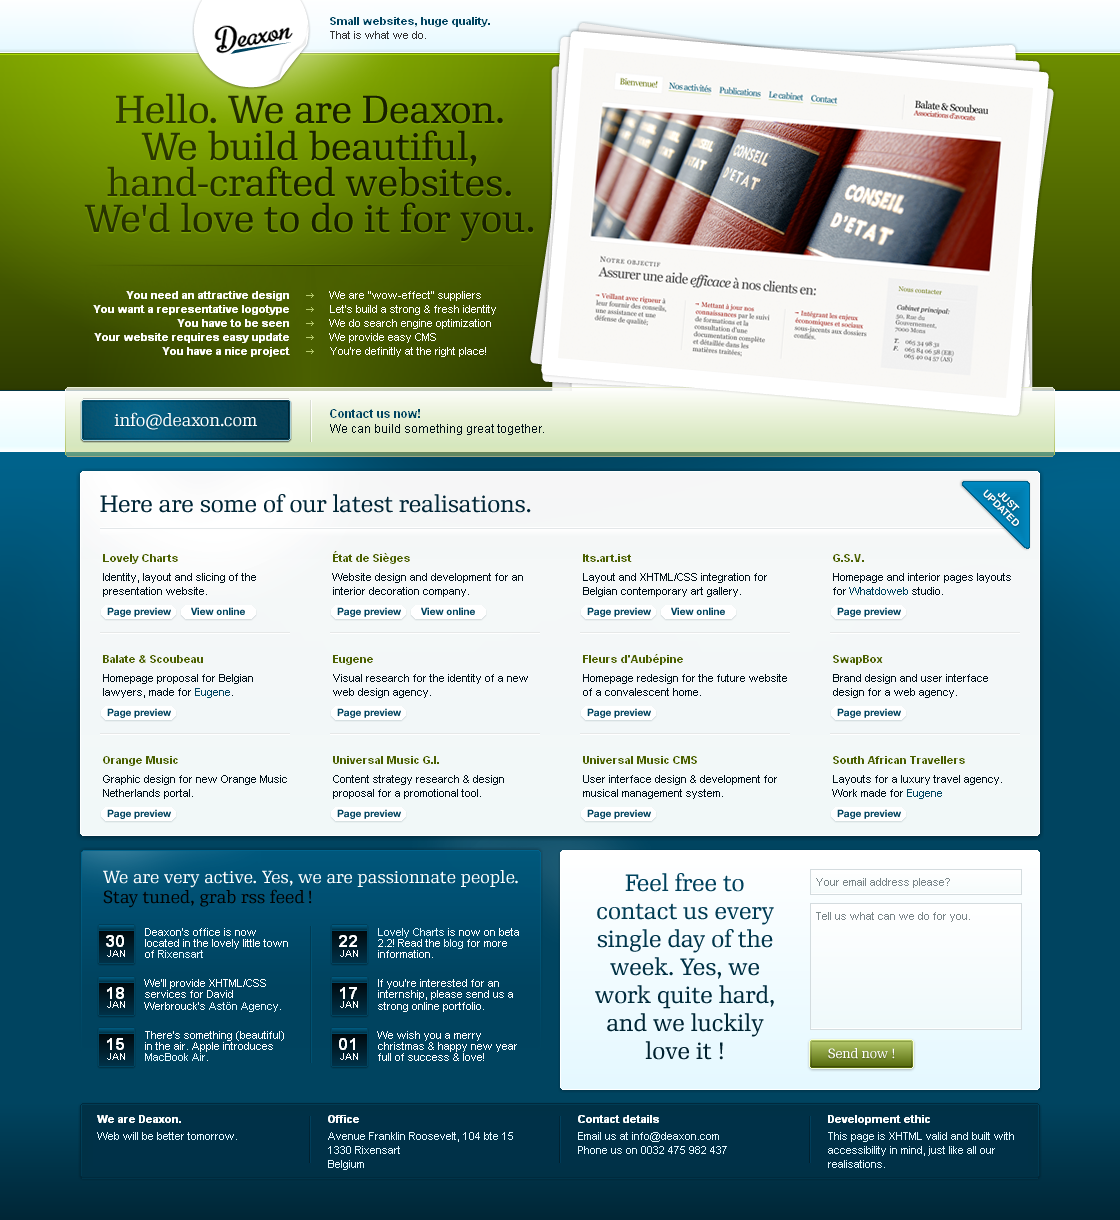 Deaxon website in 2007